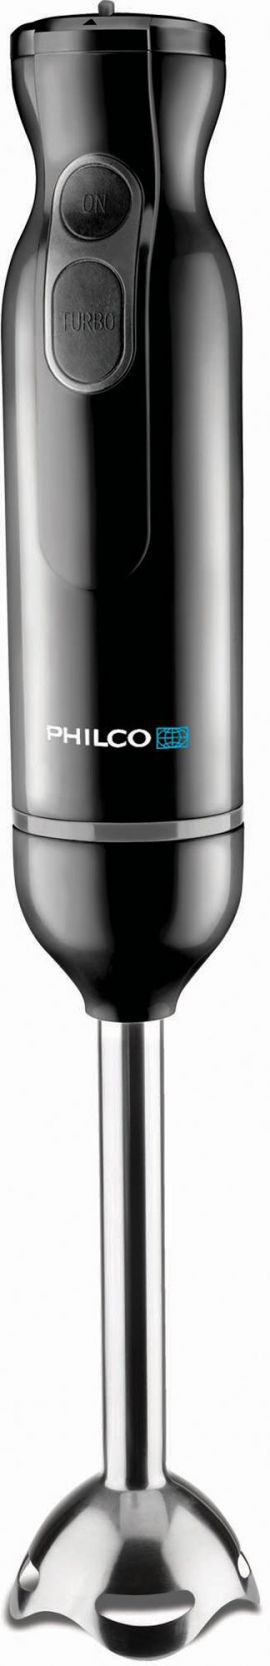 Blender PHILCO PHHB 6603